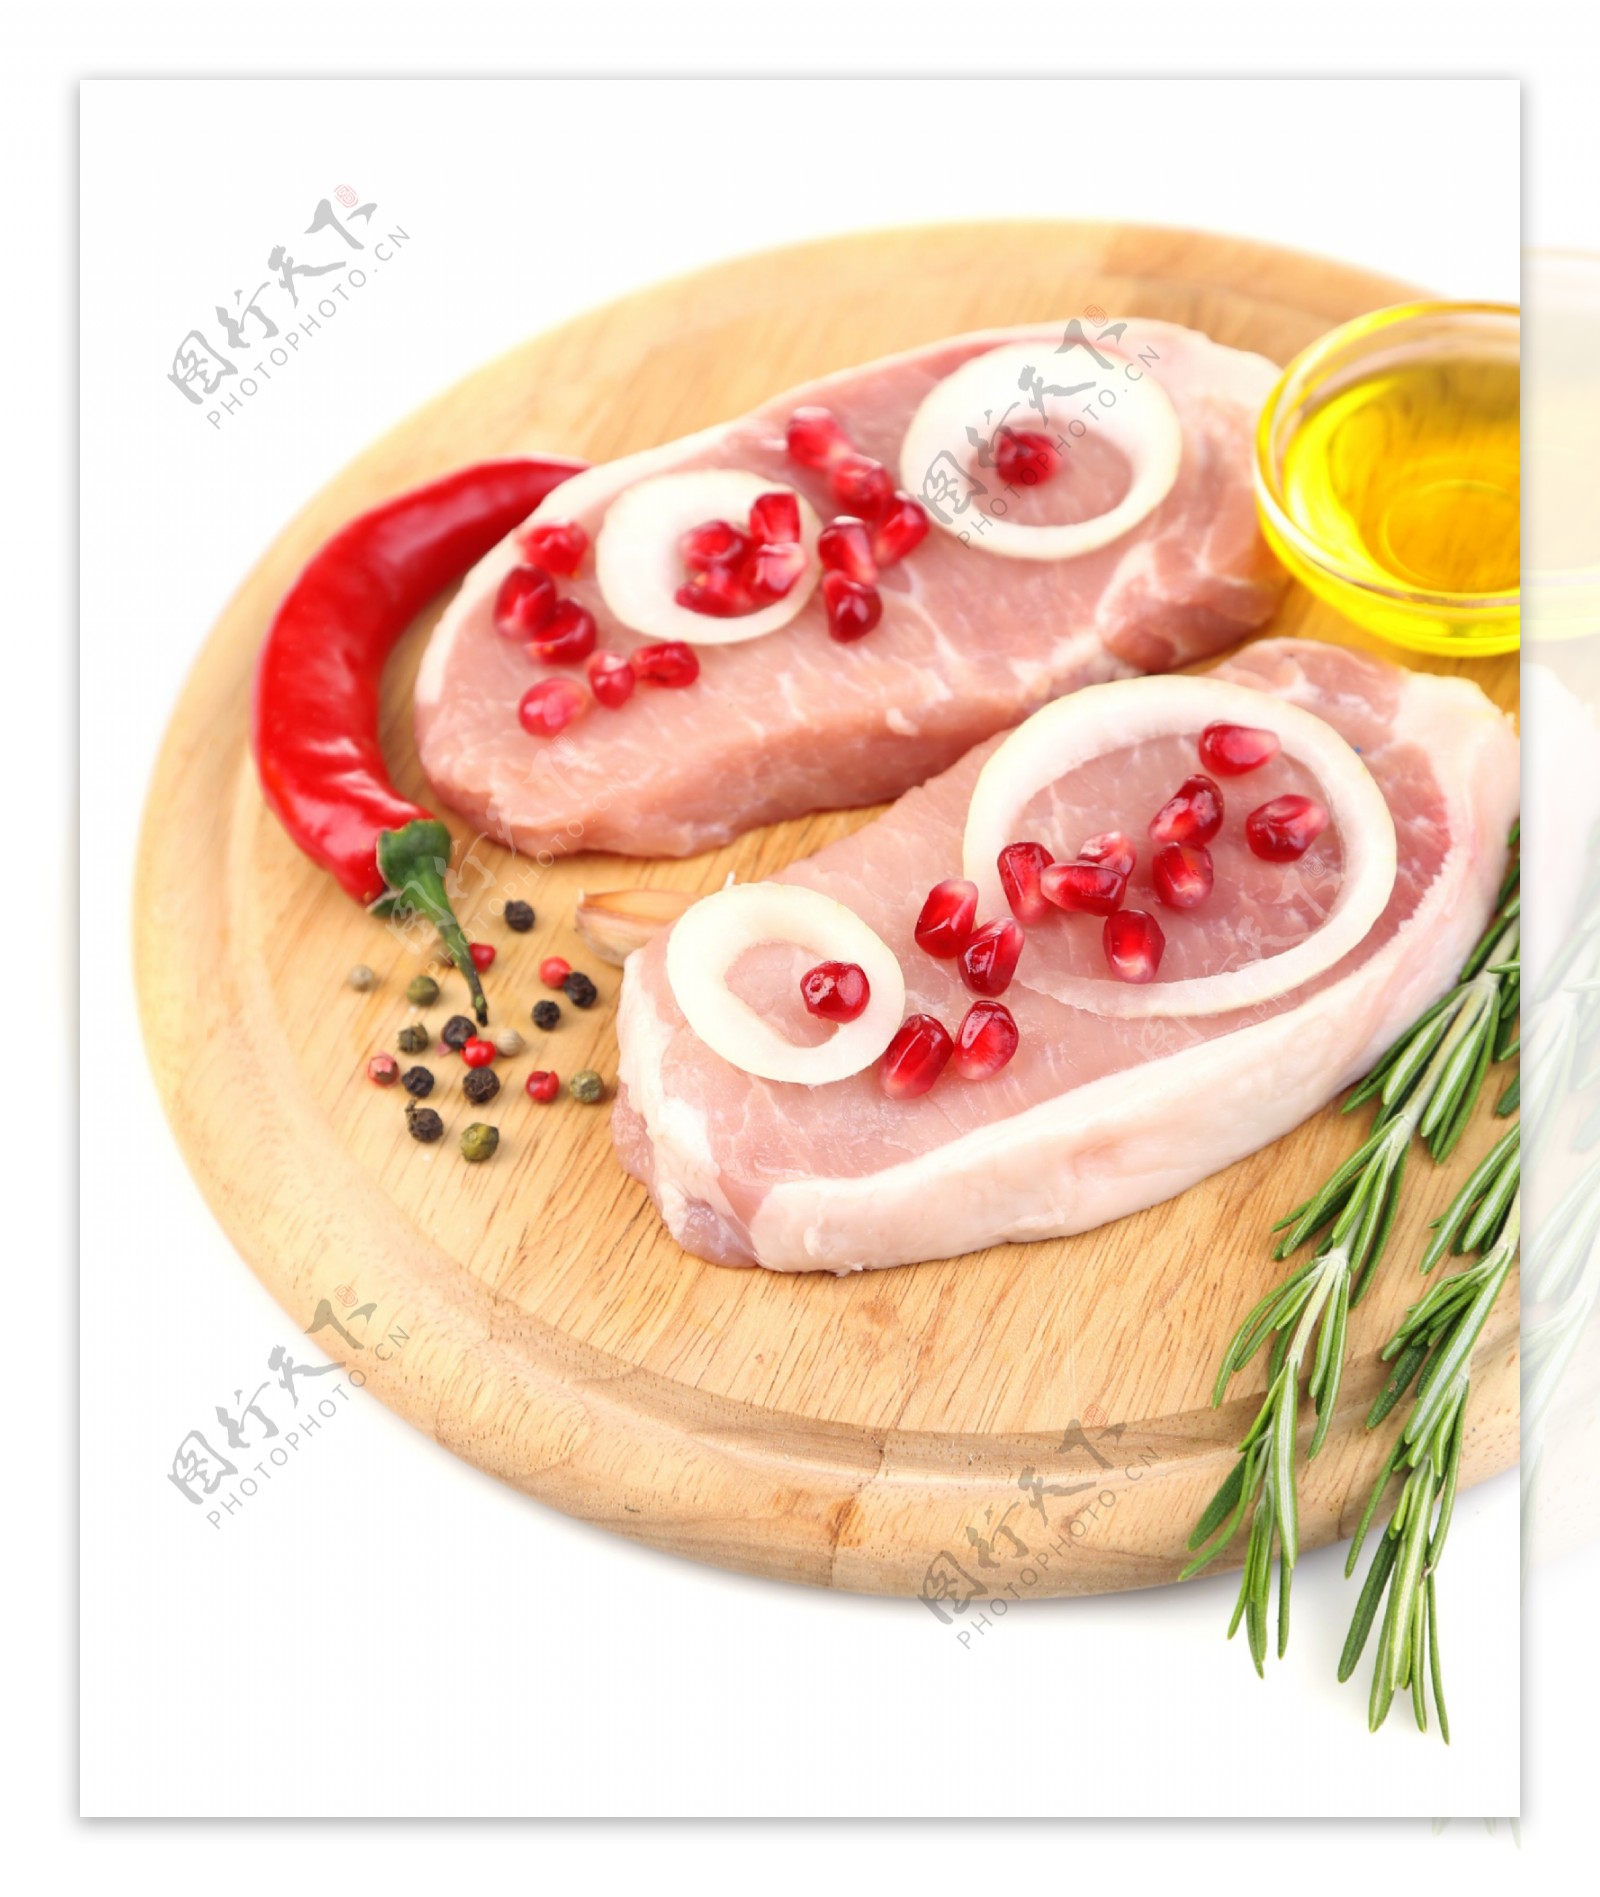 菜板上的肉和各种调料图片